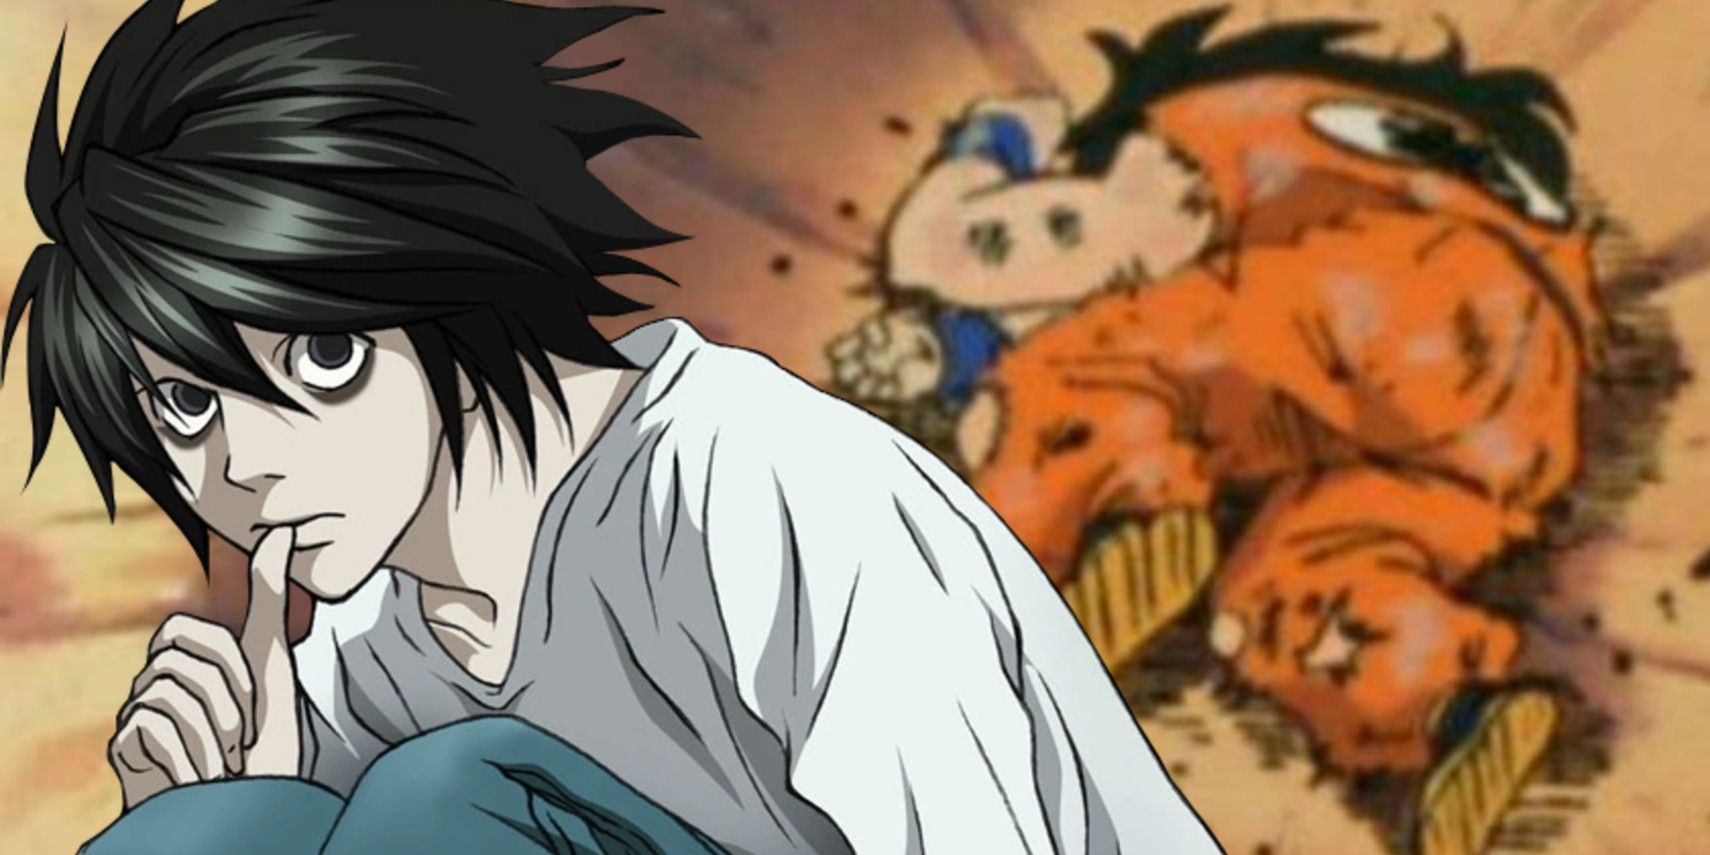 Why The God of High School Anime FAILED - Anime vs. Manhwa/Webtoon - YouTube